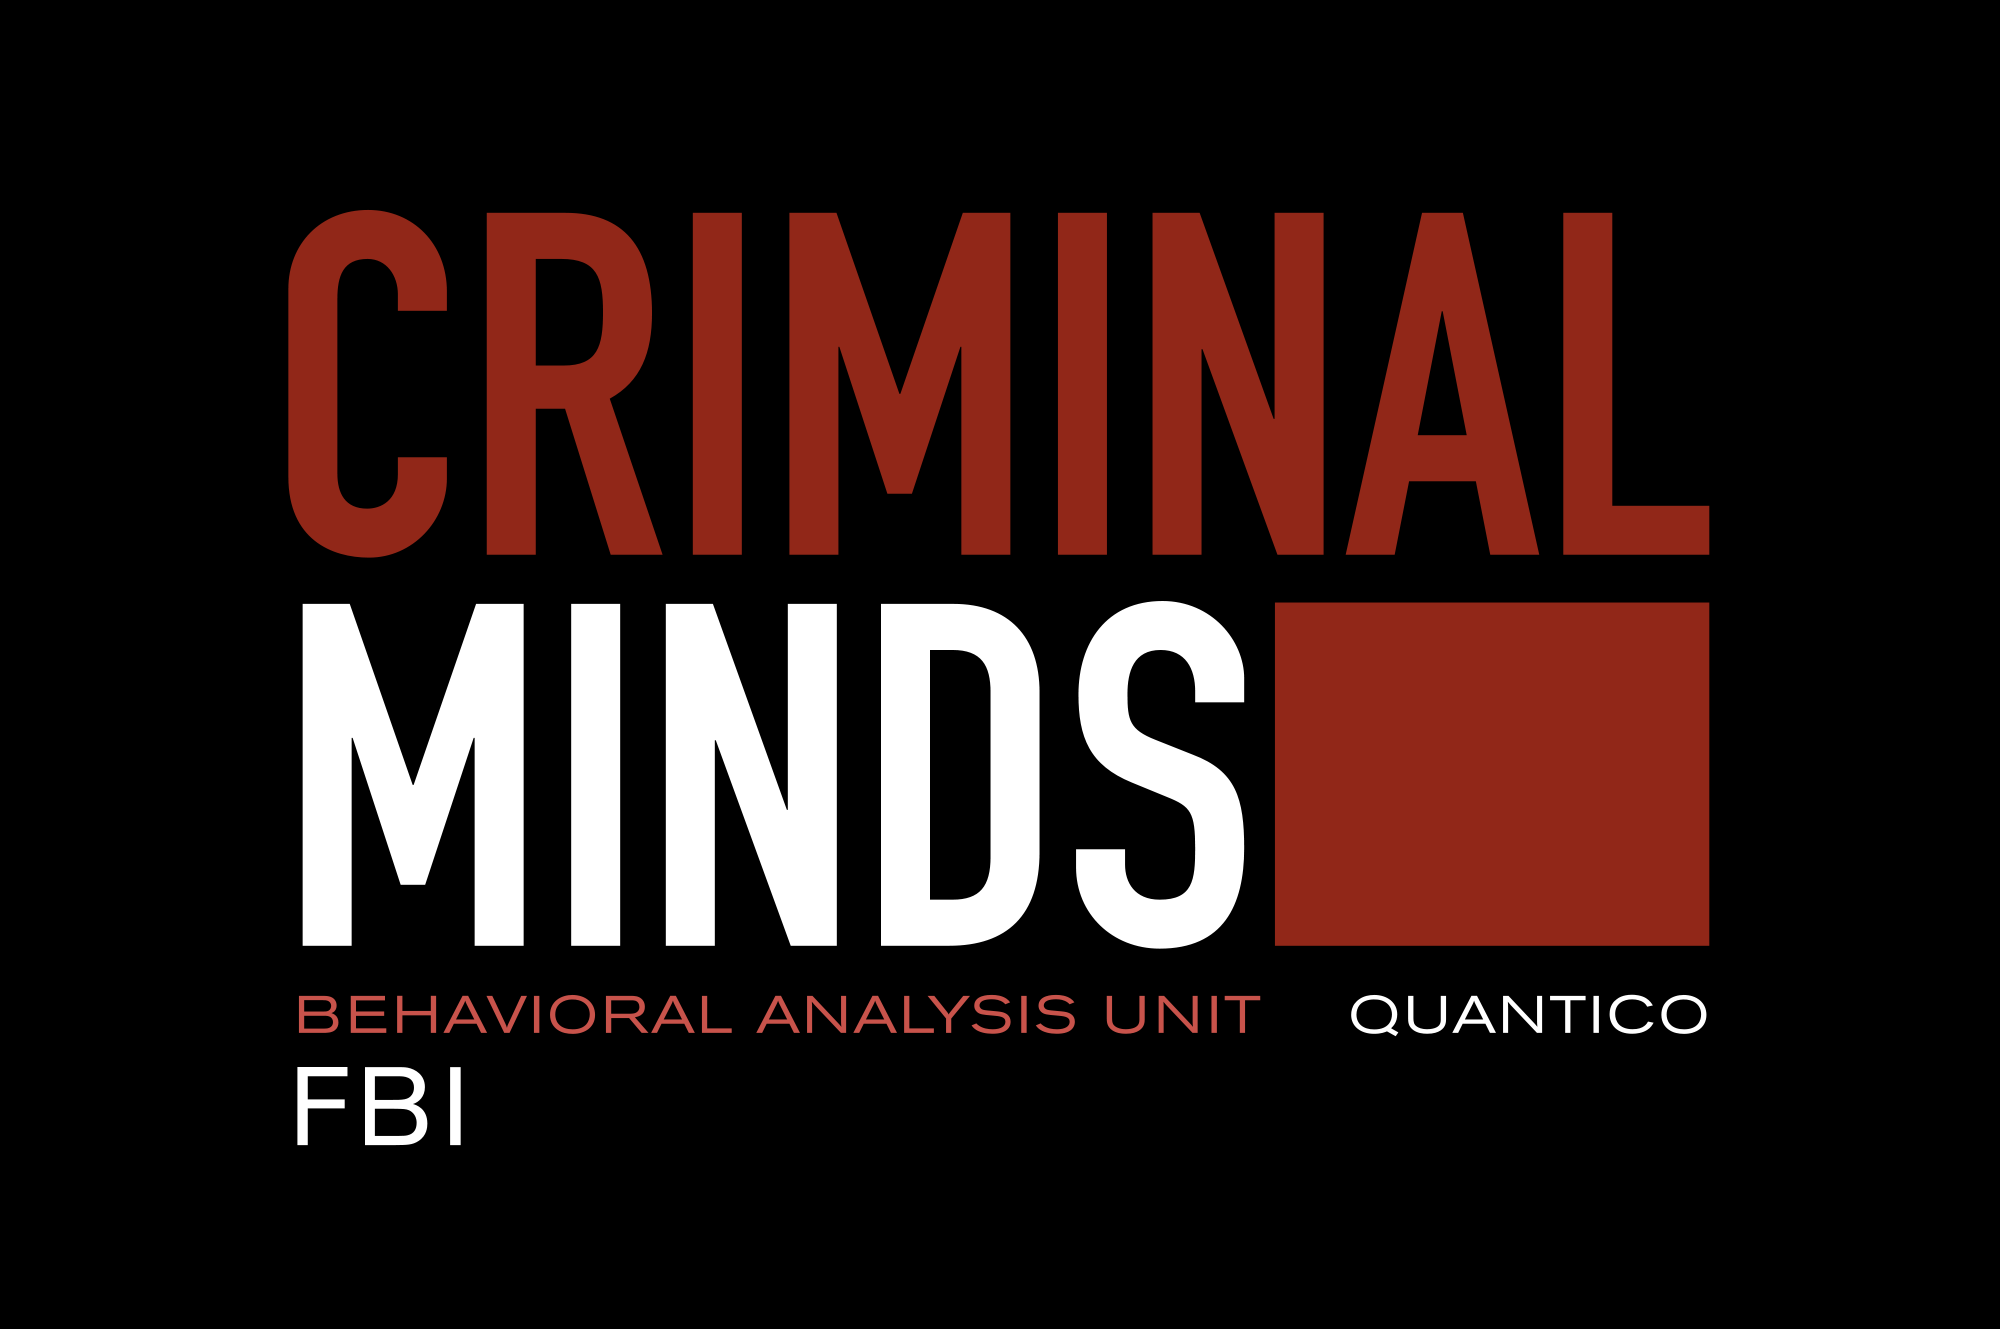 ‘Criminal Minds’ Ends After 15 Seasons